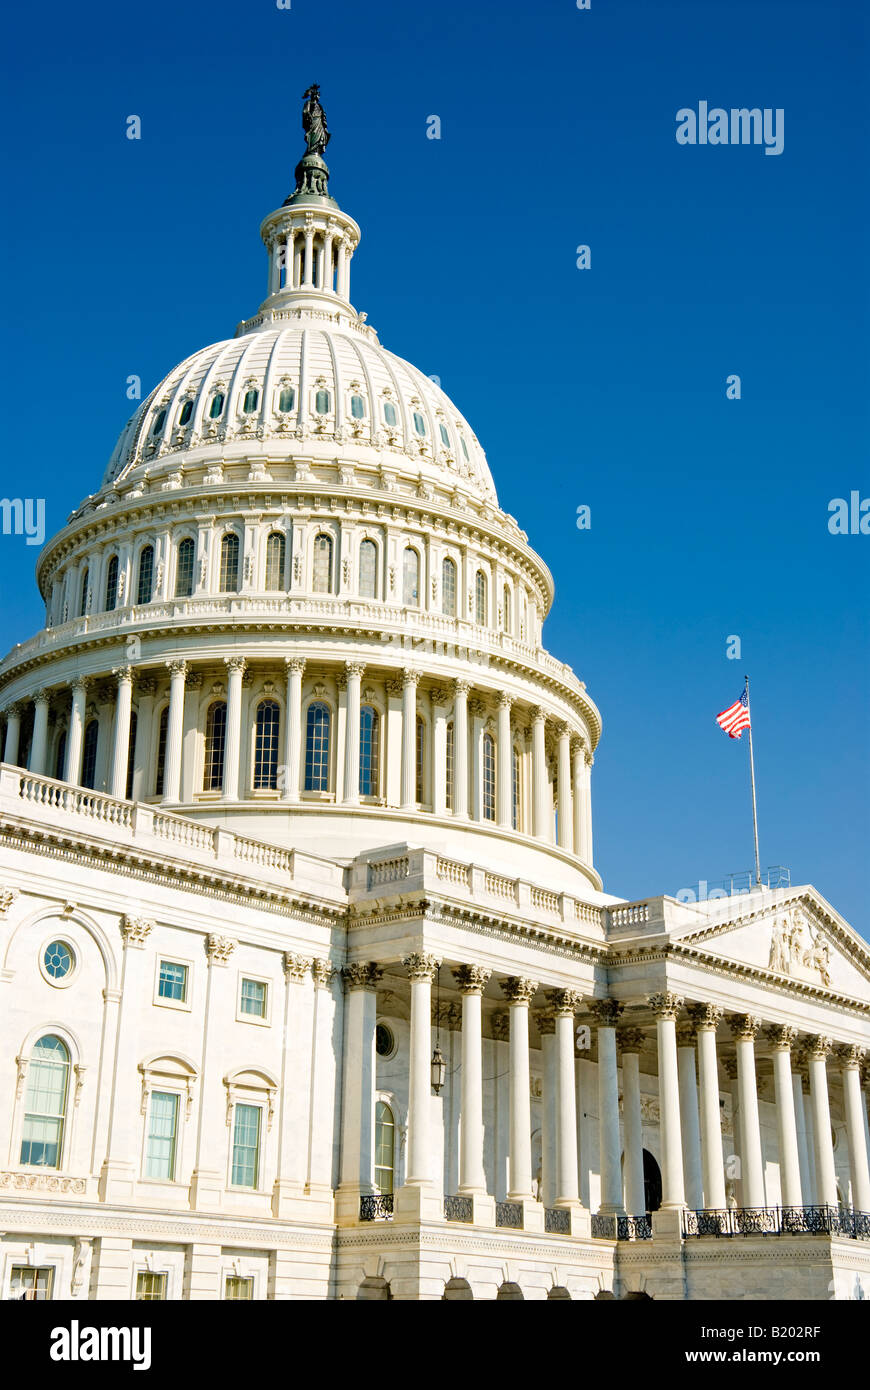 El edificio del Capitolio de EEUU, Washington DC. Fotos tomadas desde el lado oriental en frente de la Cámara de Representantes el ala. Foto de stock